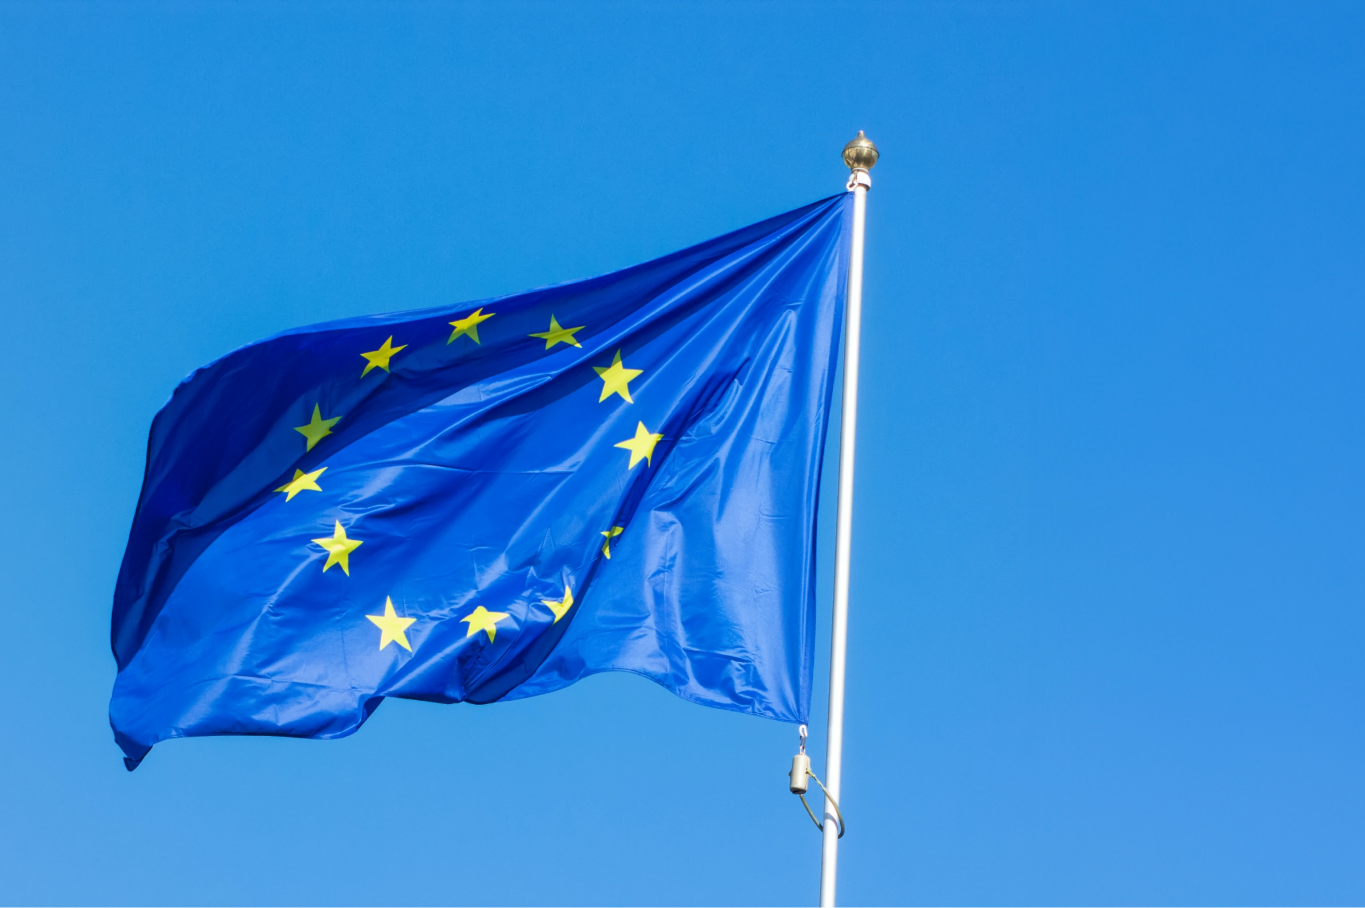 EU-flagget på blå himmel.